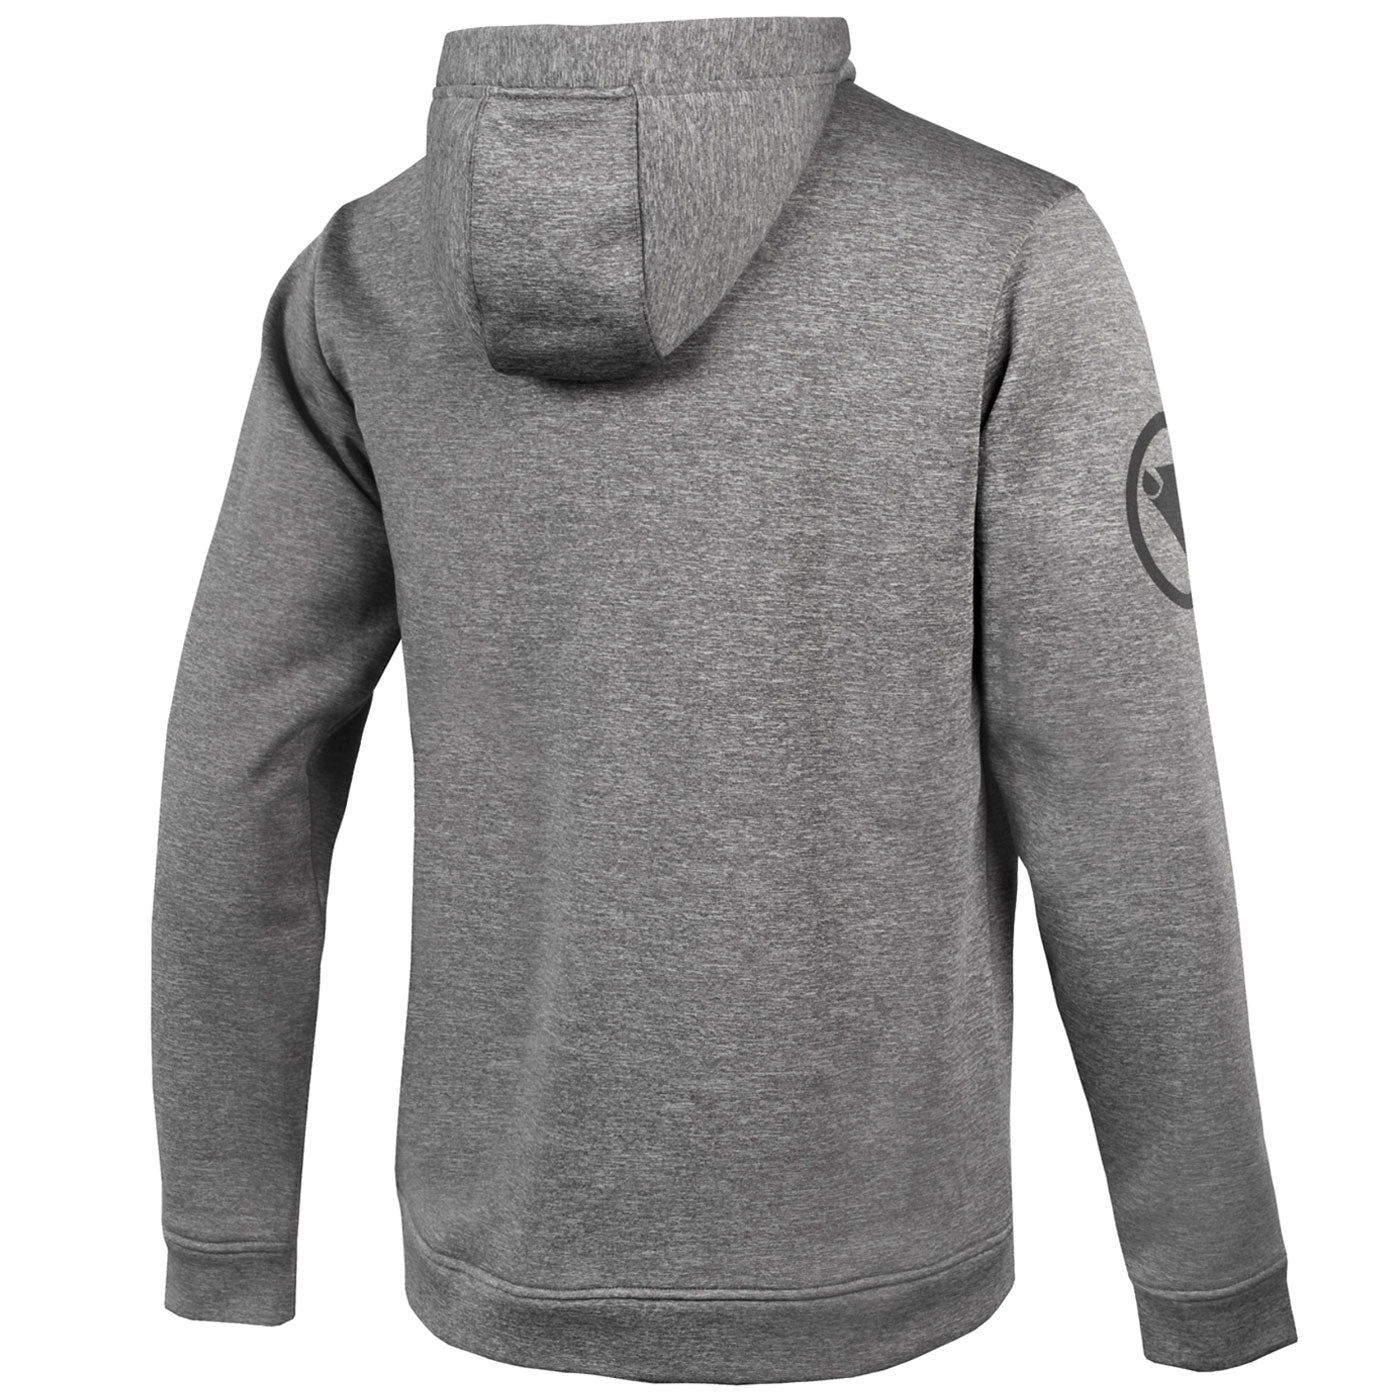 Endura Hummvee Hoodie sweatshirt - Grey